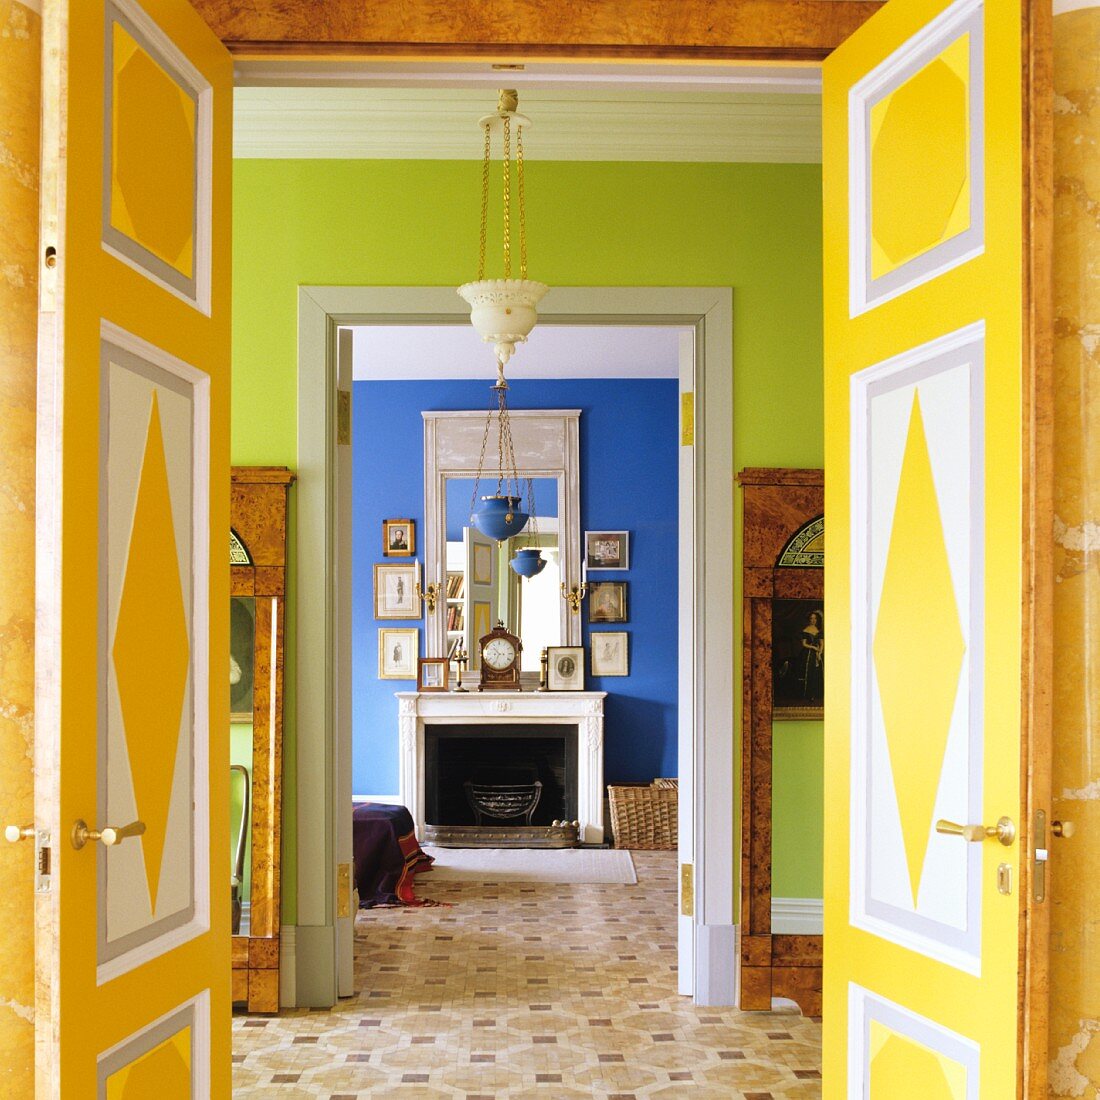 Offene Flügeltüren mit farbenfroher Bemalung und Blick durch grünen Nebenraum in blaues Zimmer mit offenem Kamin